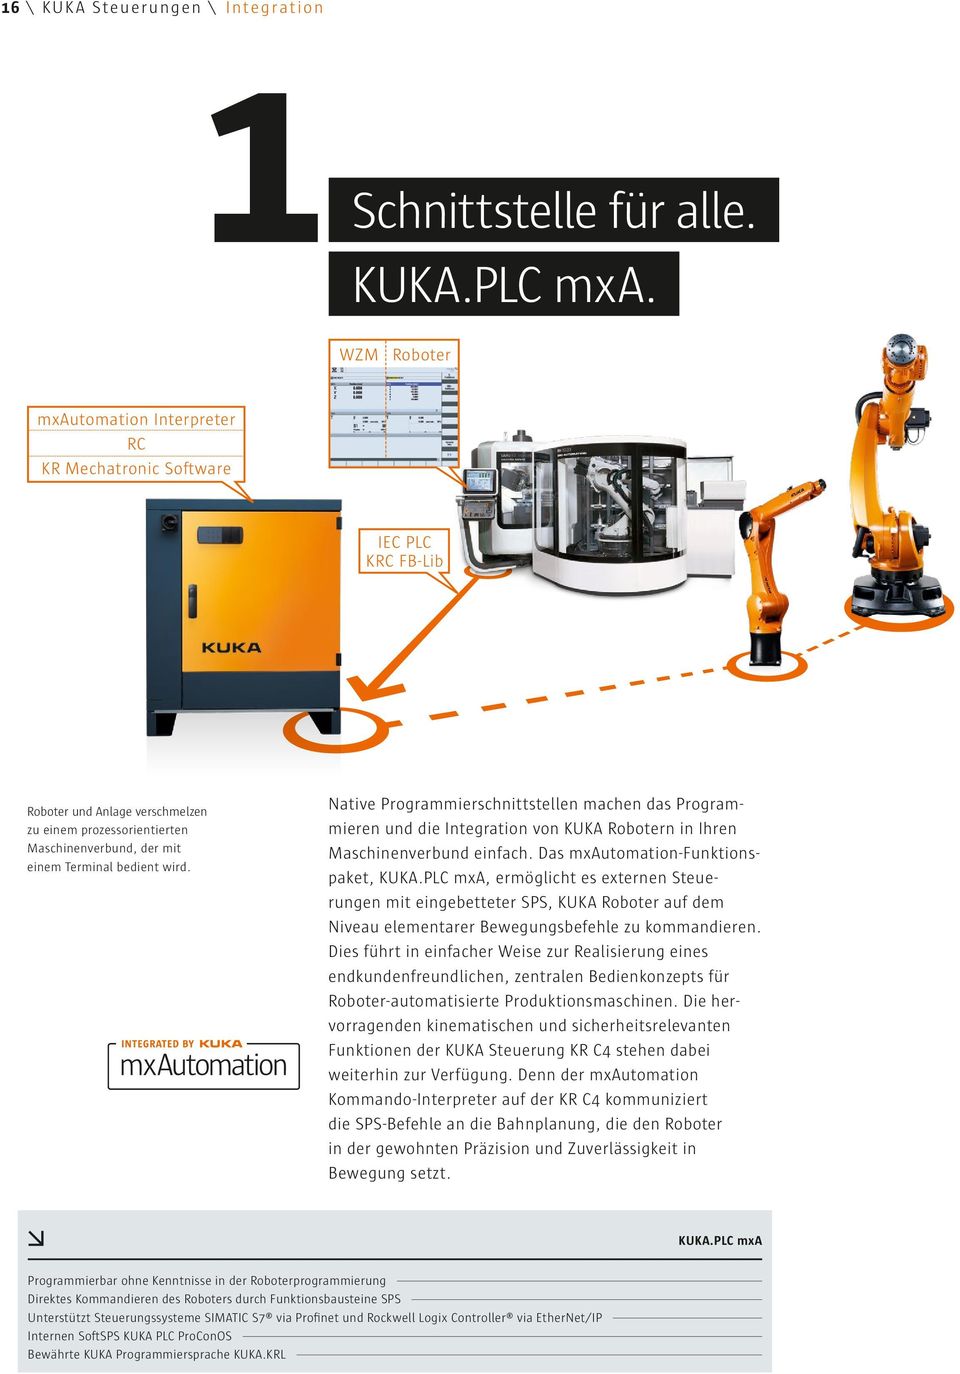 Native Programmierschnittstellen machen das Programmieren und die Integration von KUKA Robotern in Ihren Maschinenverbund einfach. Das mxautomation-funktionspaket, KUKA.